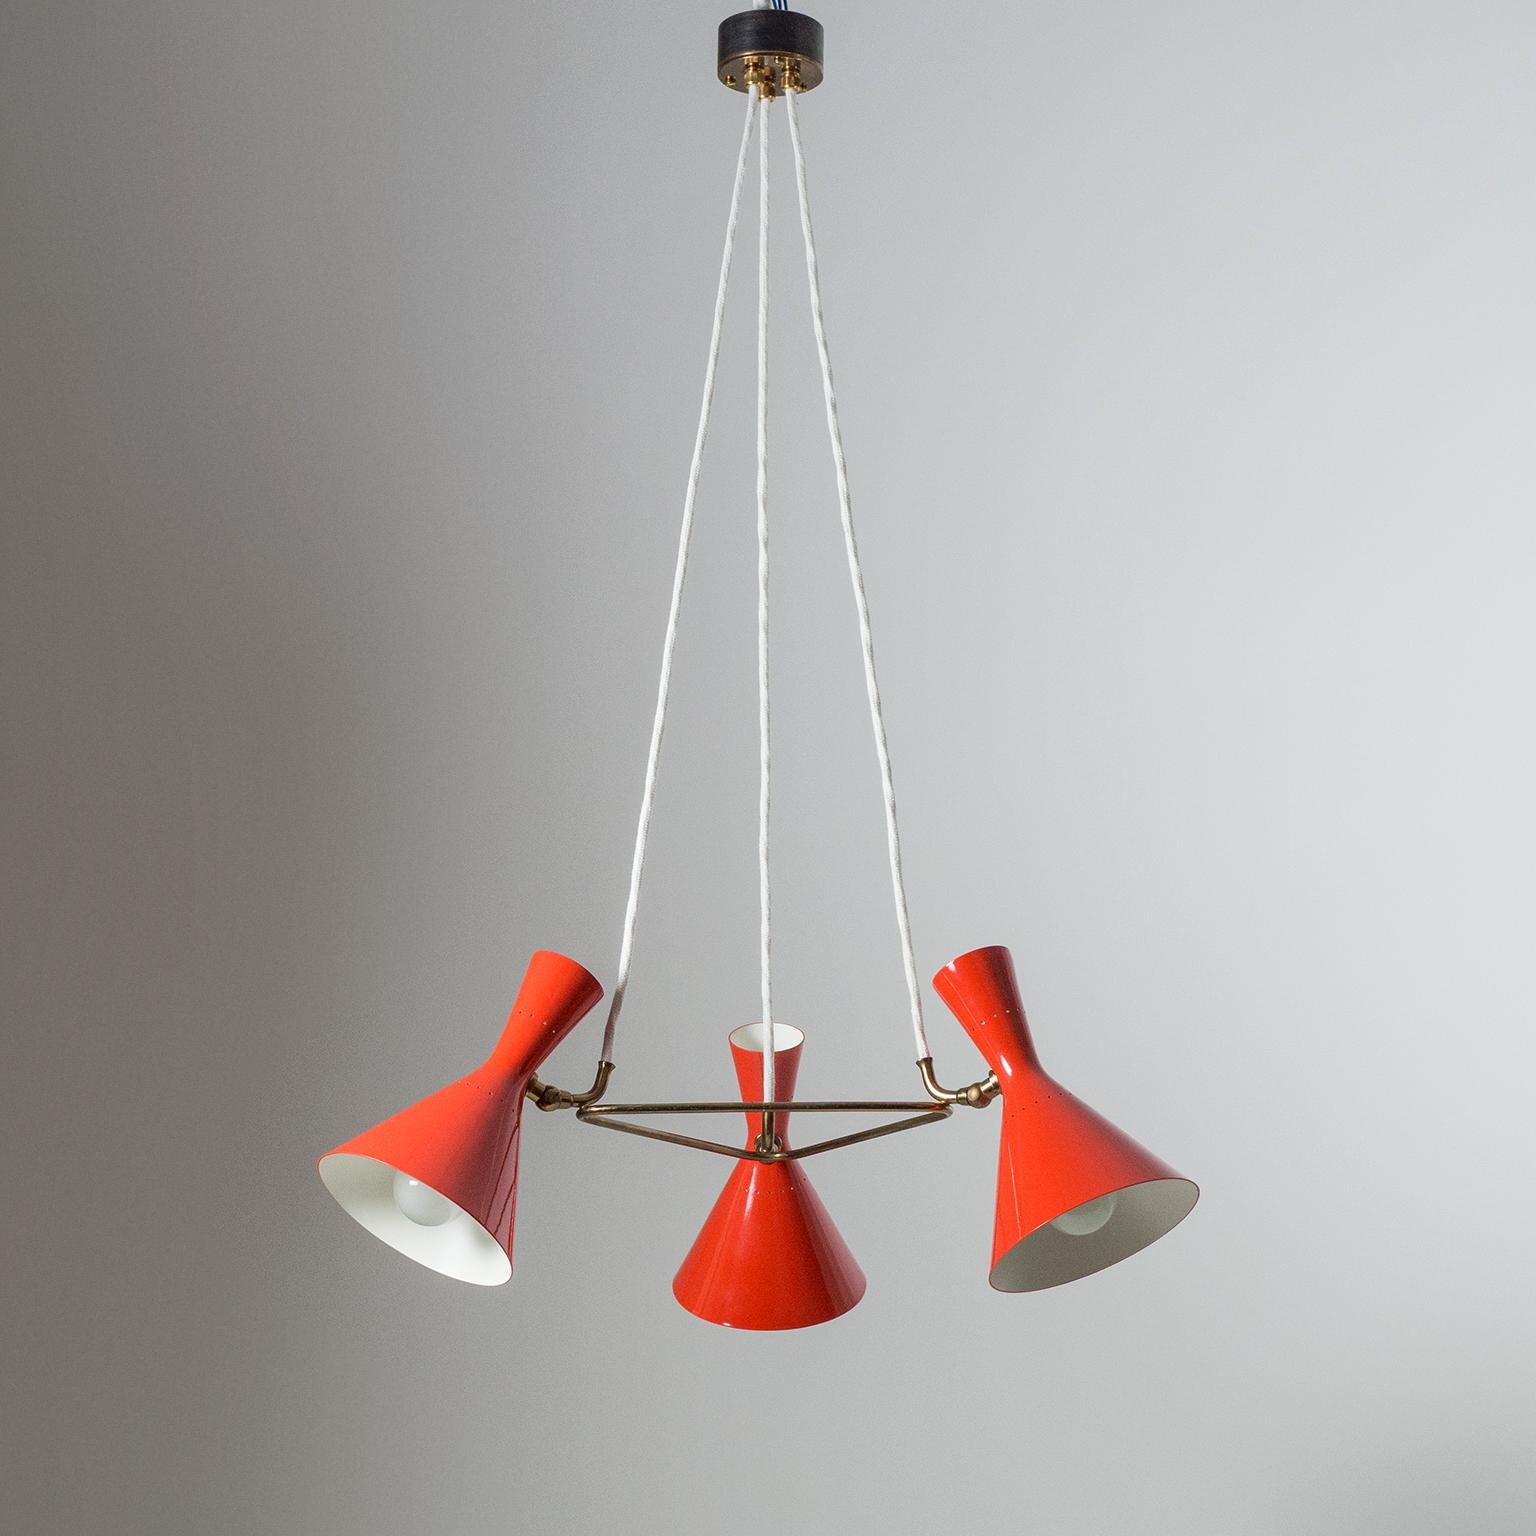 Joli lustre original en forme de cône des années 1950 par Baumann Kölliker qui a produit plusieurs modèles de haute qualité pour Stilnovo. Trois abat-jour rouge vif à double cône (